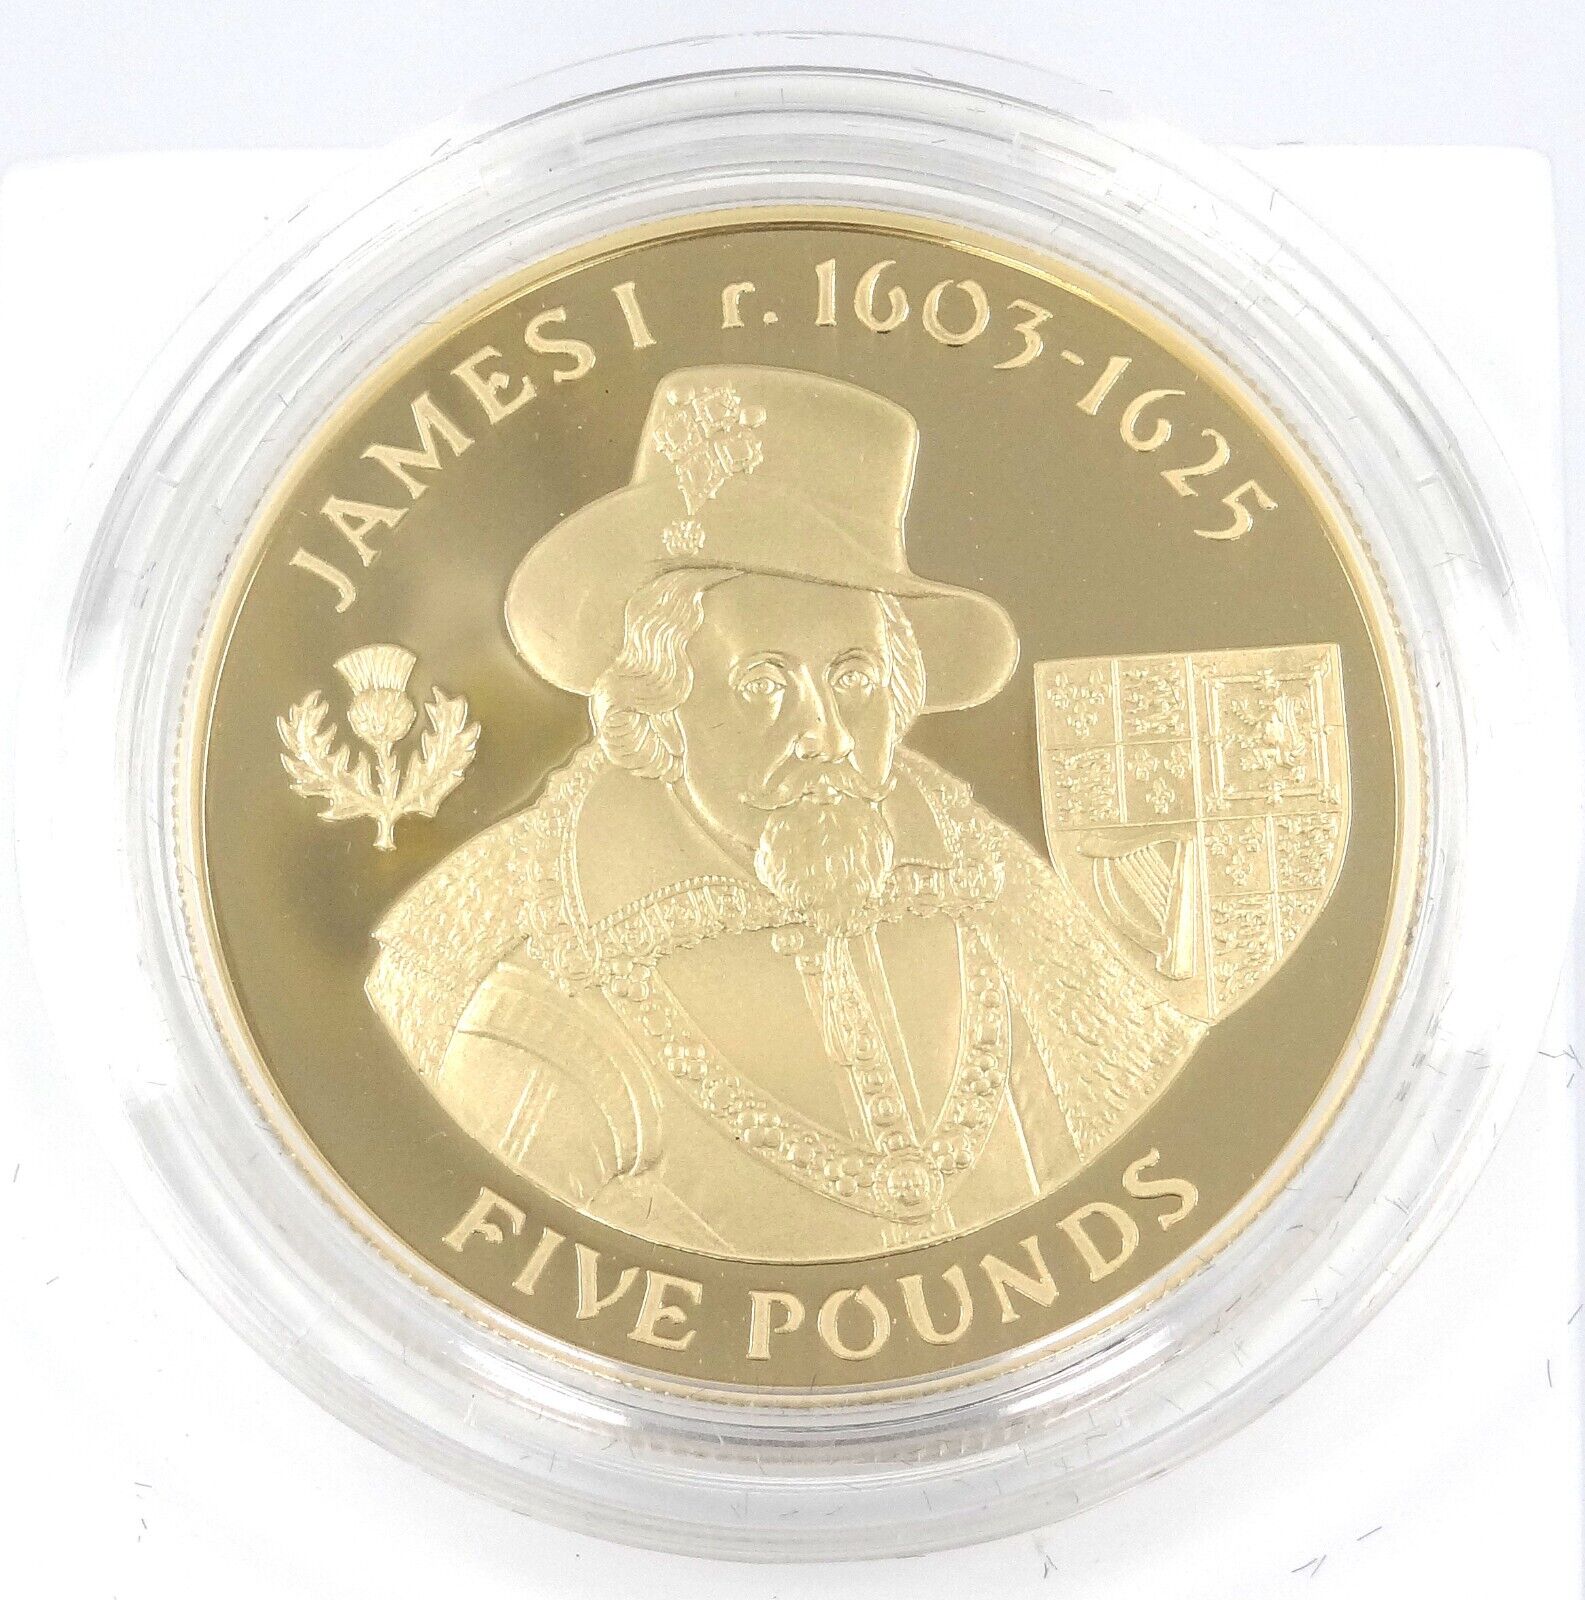 28.28g Silver Coin 2007 Alderney 5 Pounds King James I 1603-1625 Royal Mint